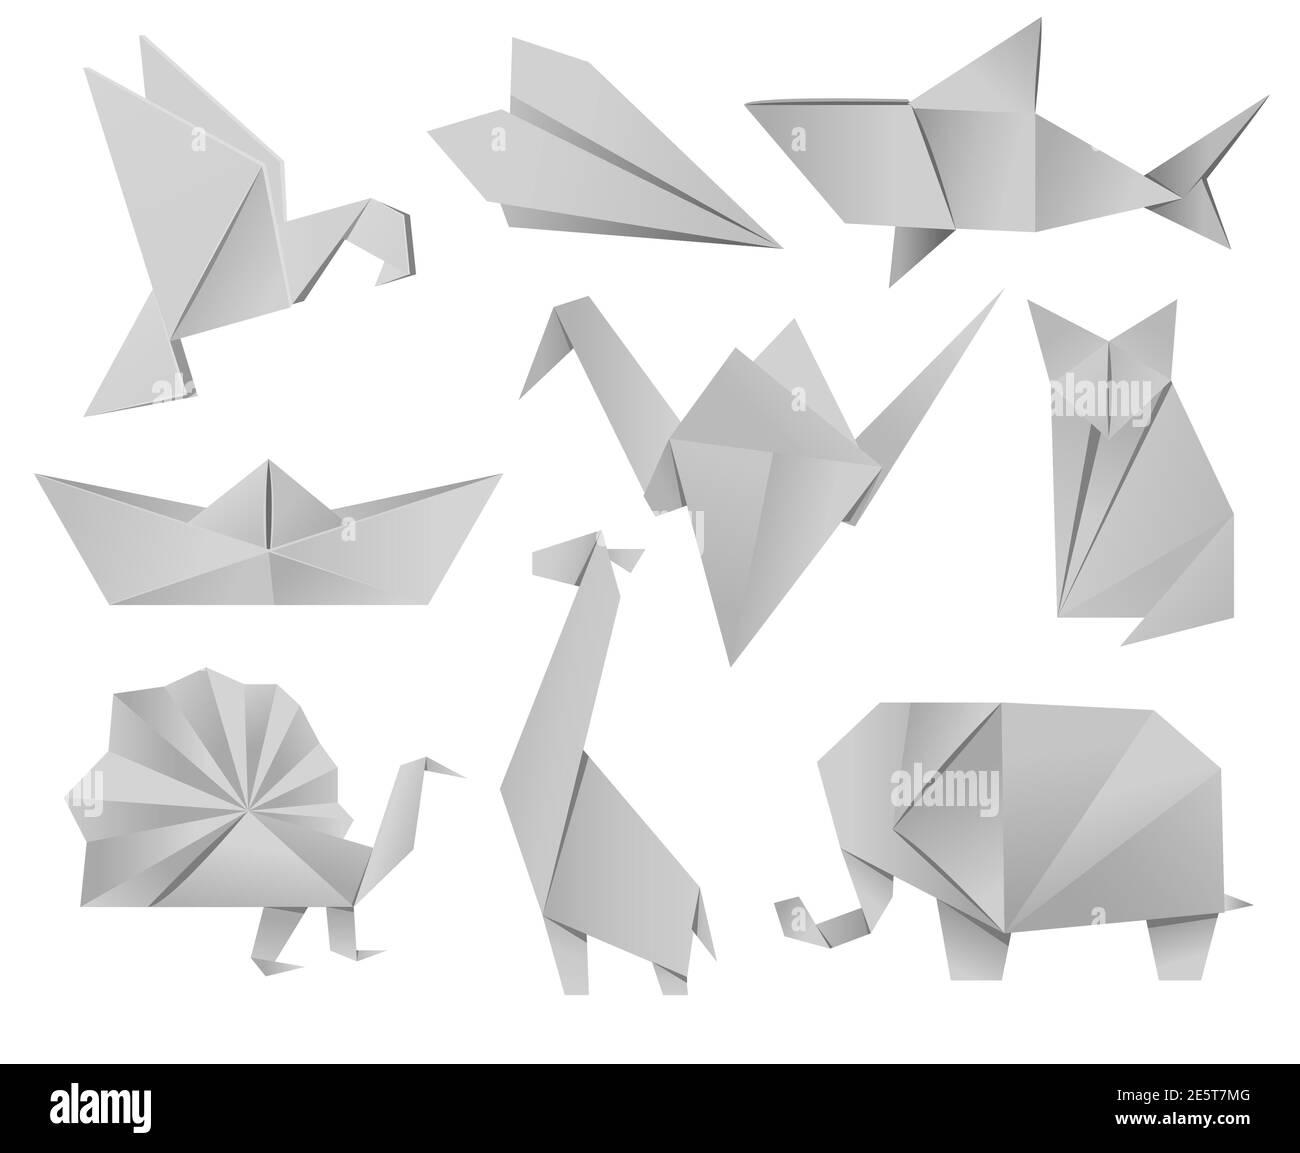 Origami Tiere Set - Vogel, Flugzeug, Kran, Pfau, Giraffe, Boot, Hai, Fuchs, Elefant. Die japanische Kunst des Faltens von Papierfiguren ist ein Hobby, Nadelarbeit. Welt-Origami-Tag, Tag Des Weißen Kranichs. Vektor Stock Vektor